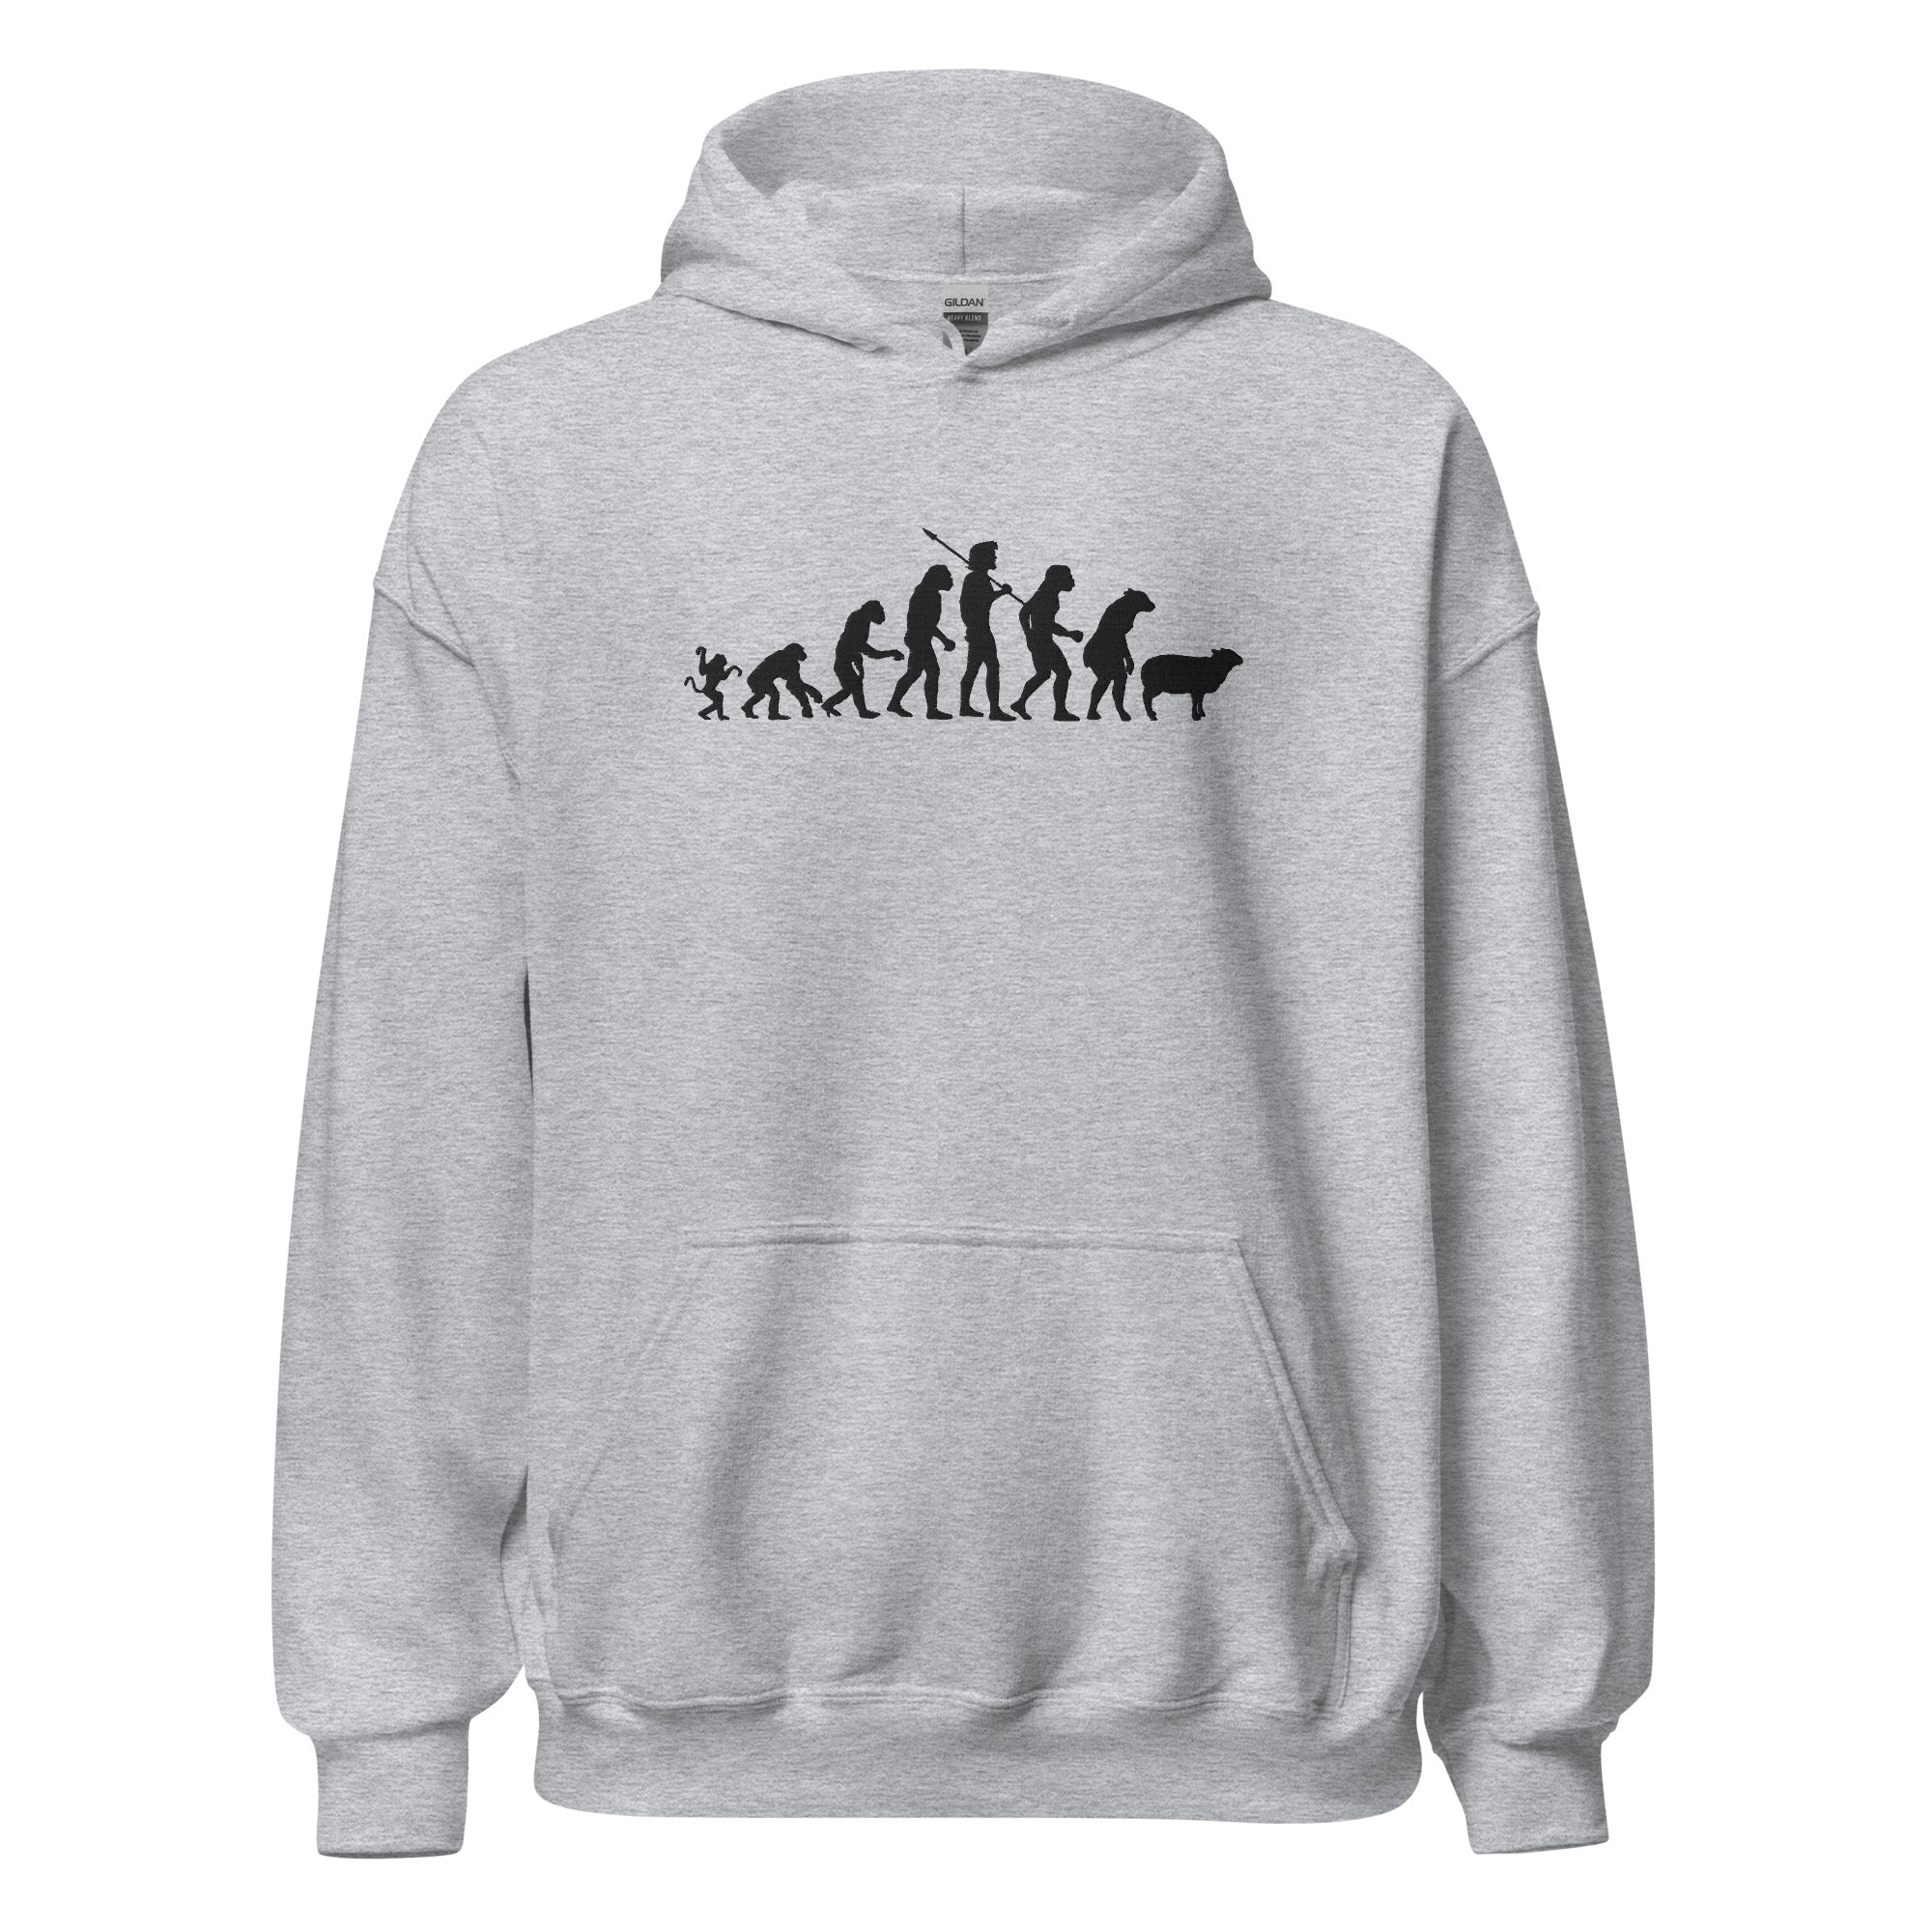 Evolution of Modern Man Embroidered Hoodie Sweatshirt